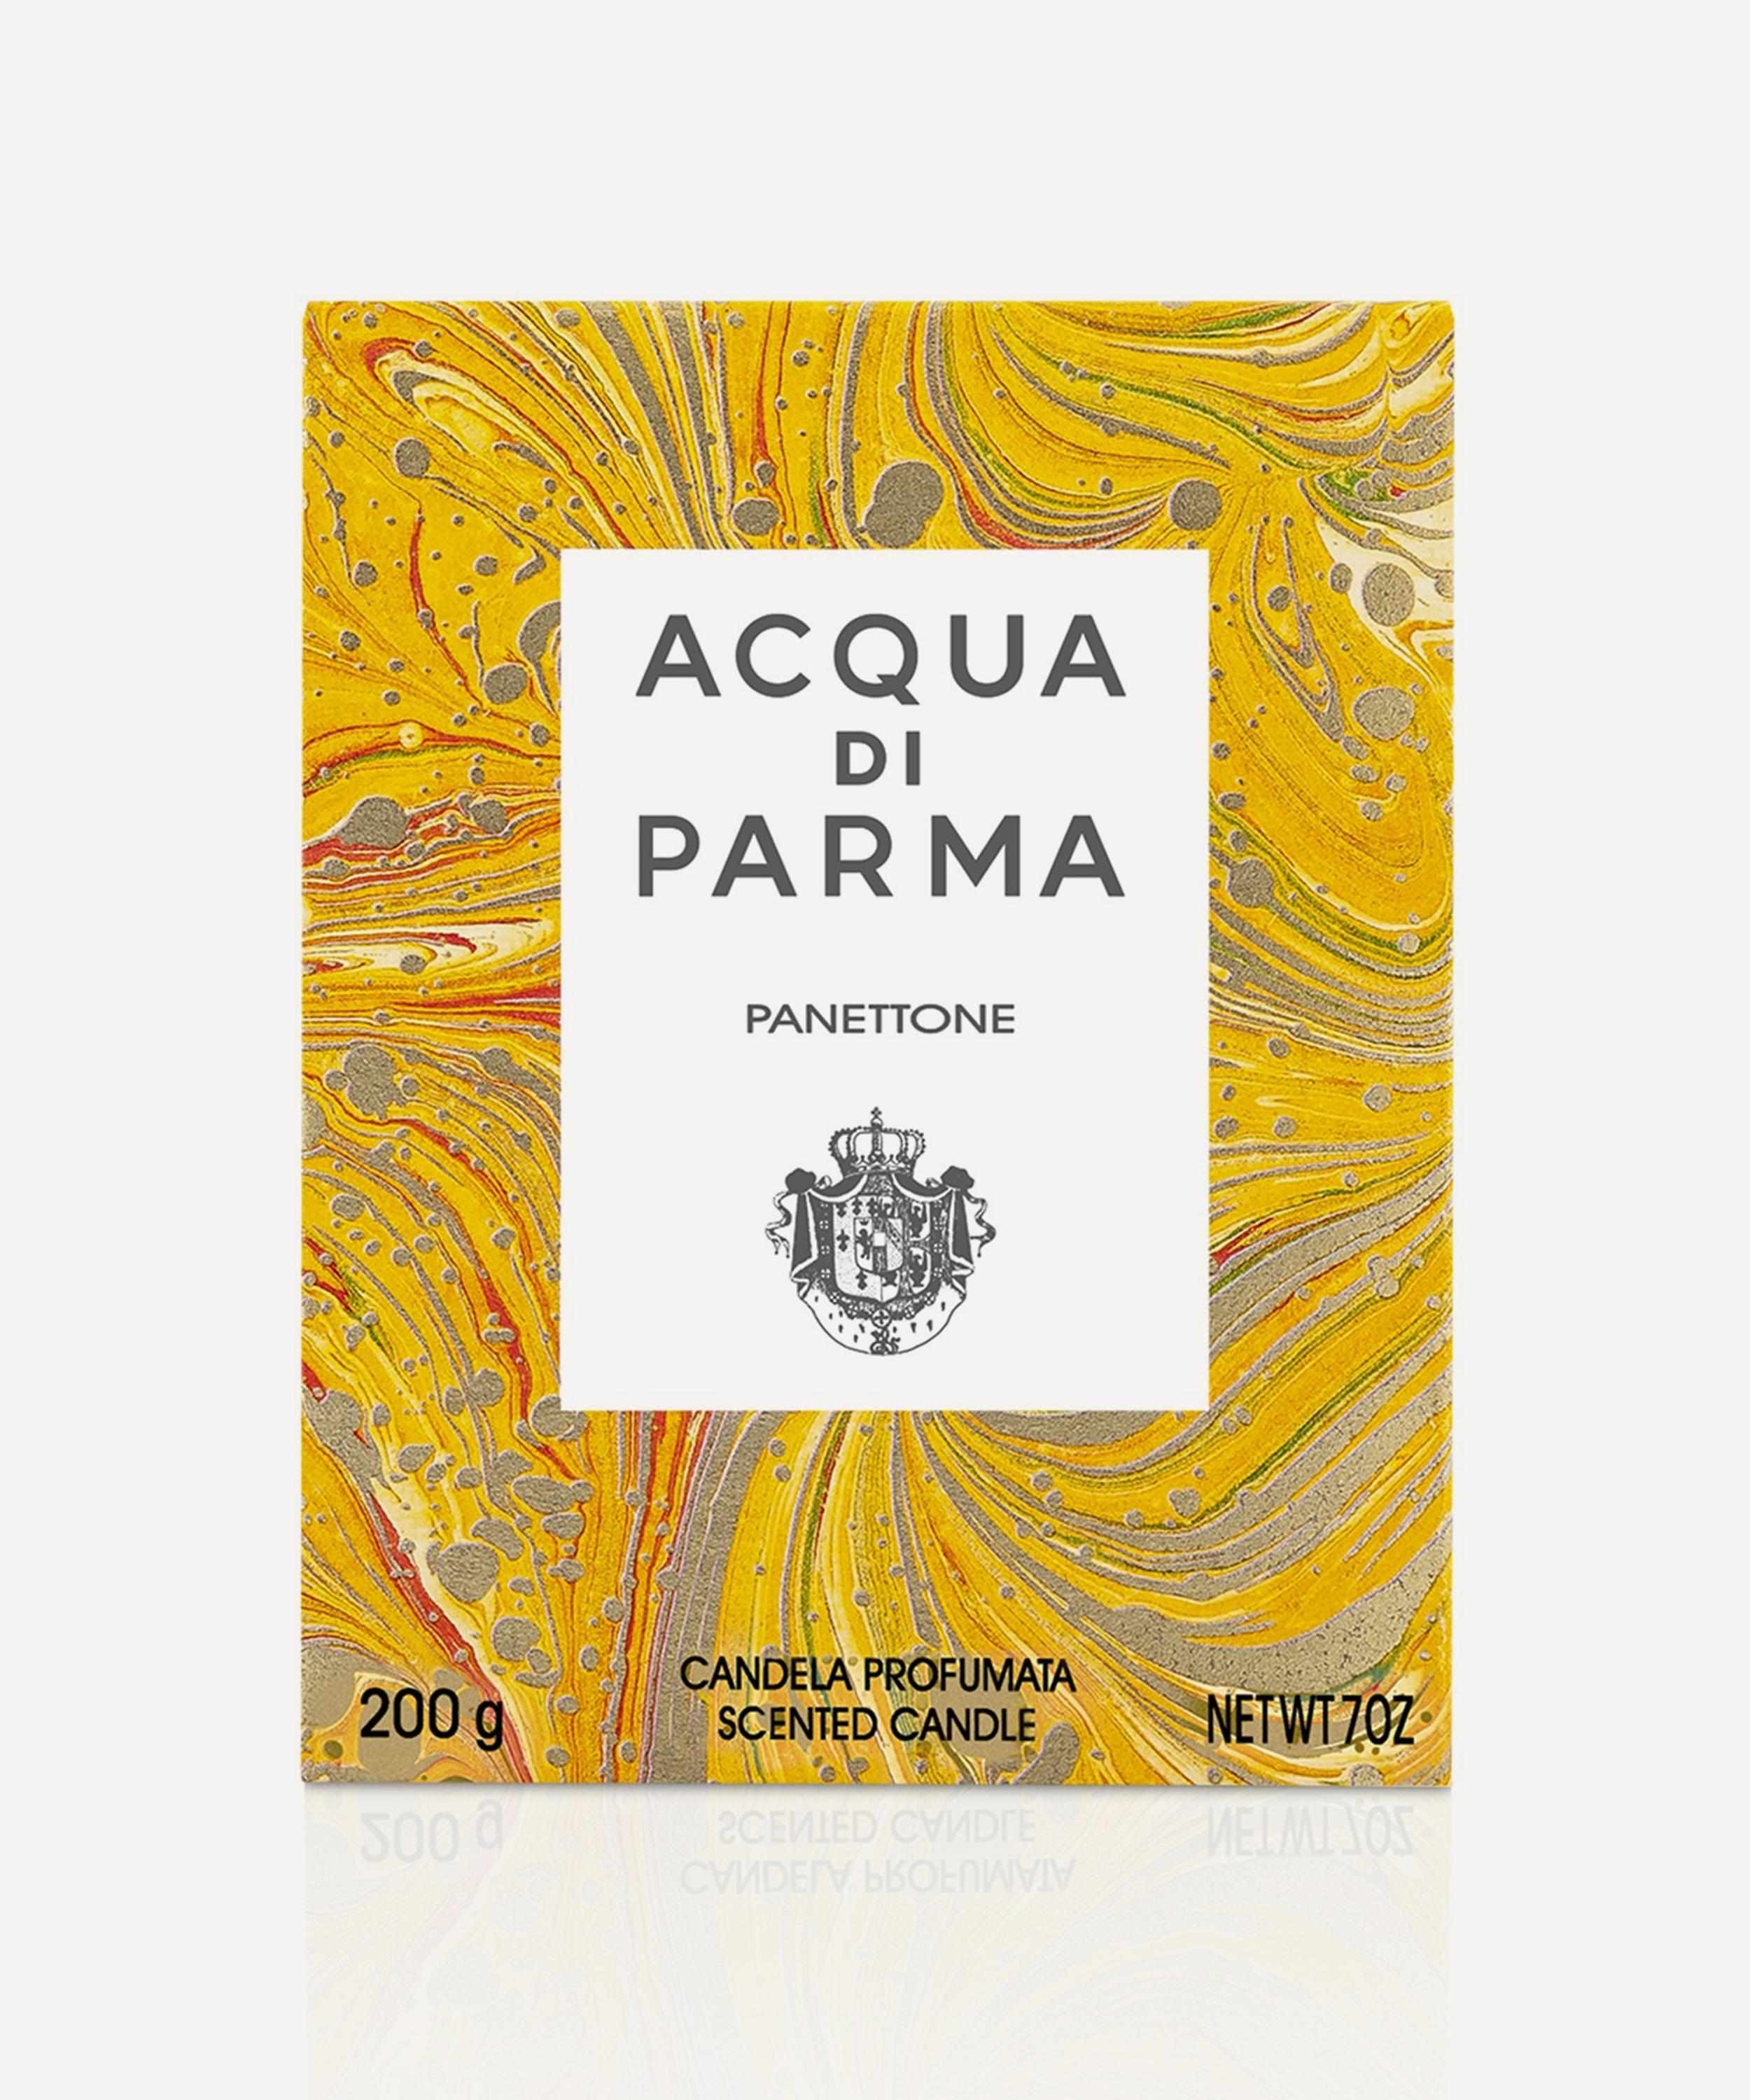 Acqua Di Parma Panettone Scented Candle 200g | Liberty